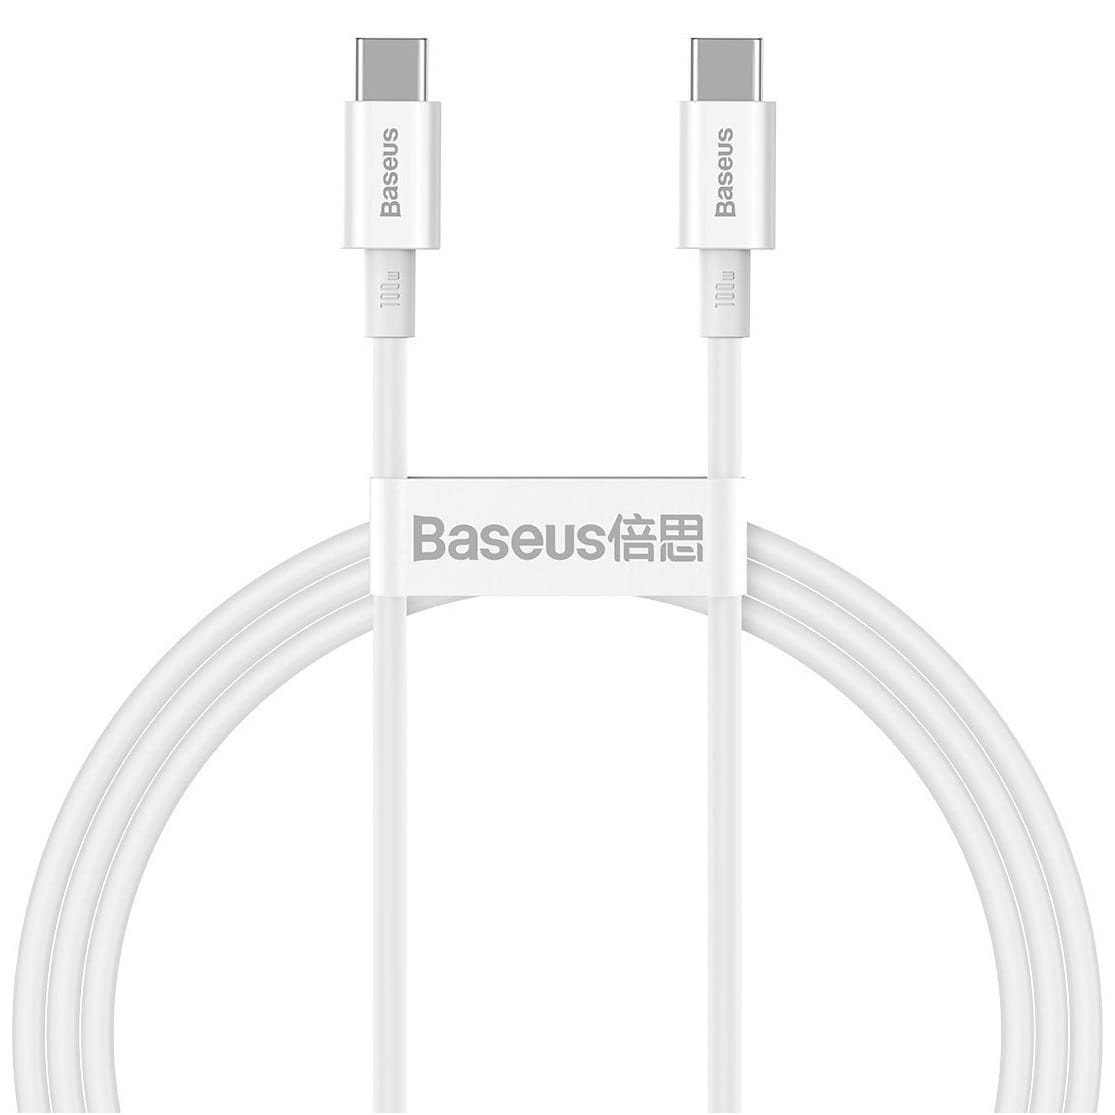 Kabel Baseus Superior 100W 5A USB-C für USB-C 1m, Weiß